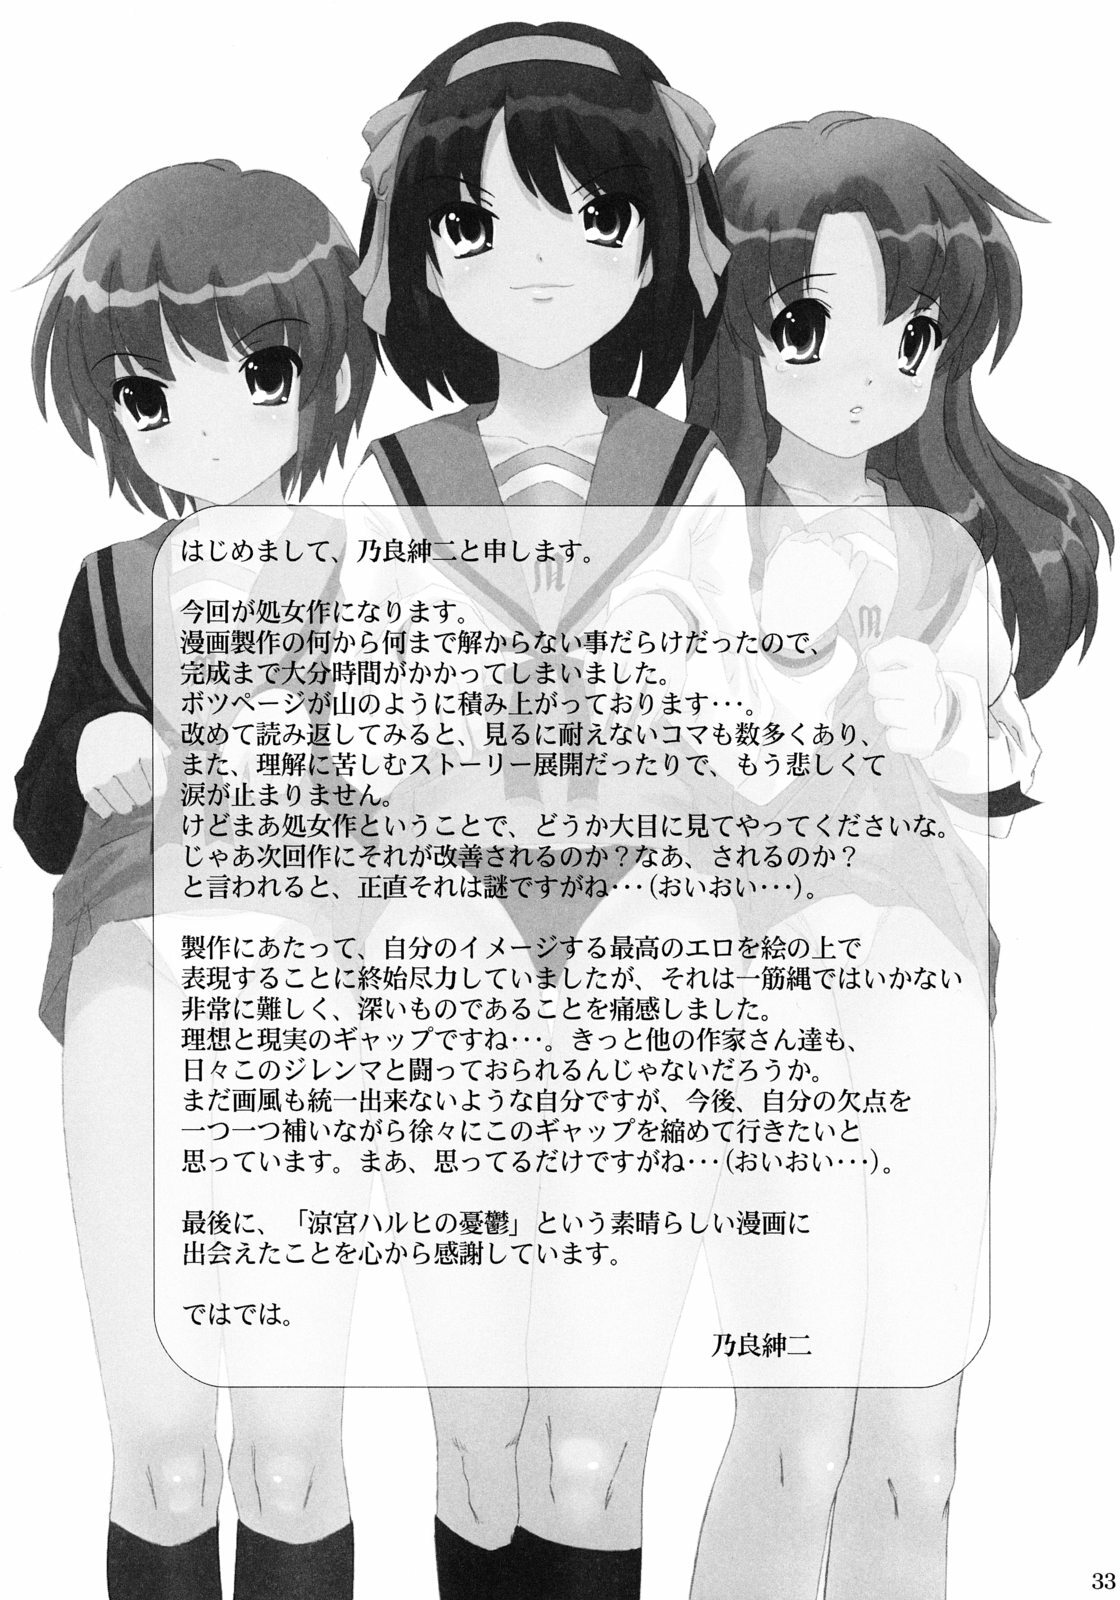 [pooca (Nora Shinji)] Okashi nasai! (The Melancholy of Haruhi Suzumiya) page 32 full